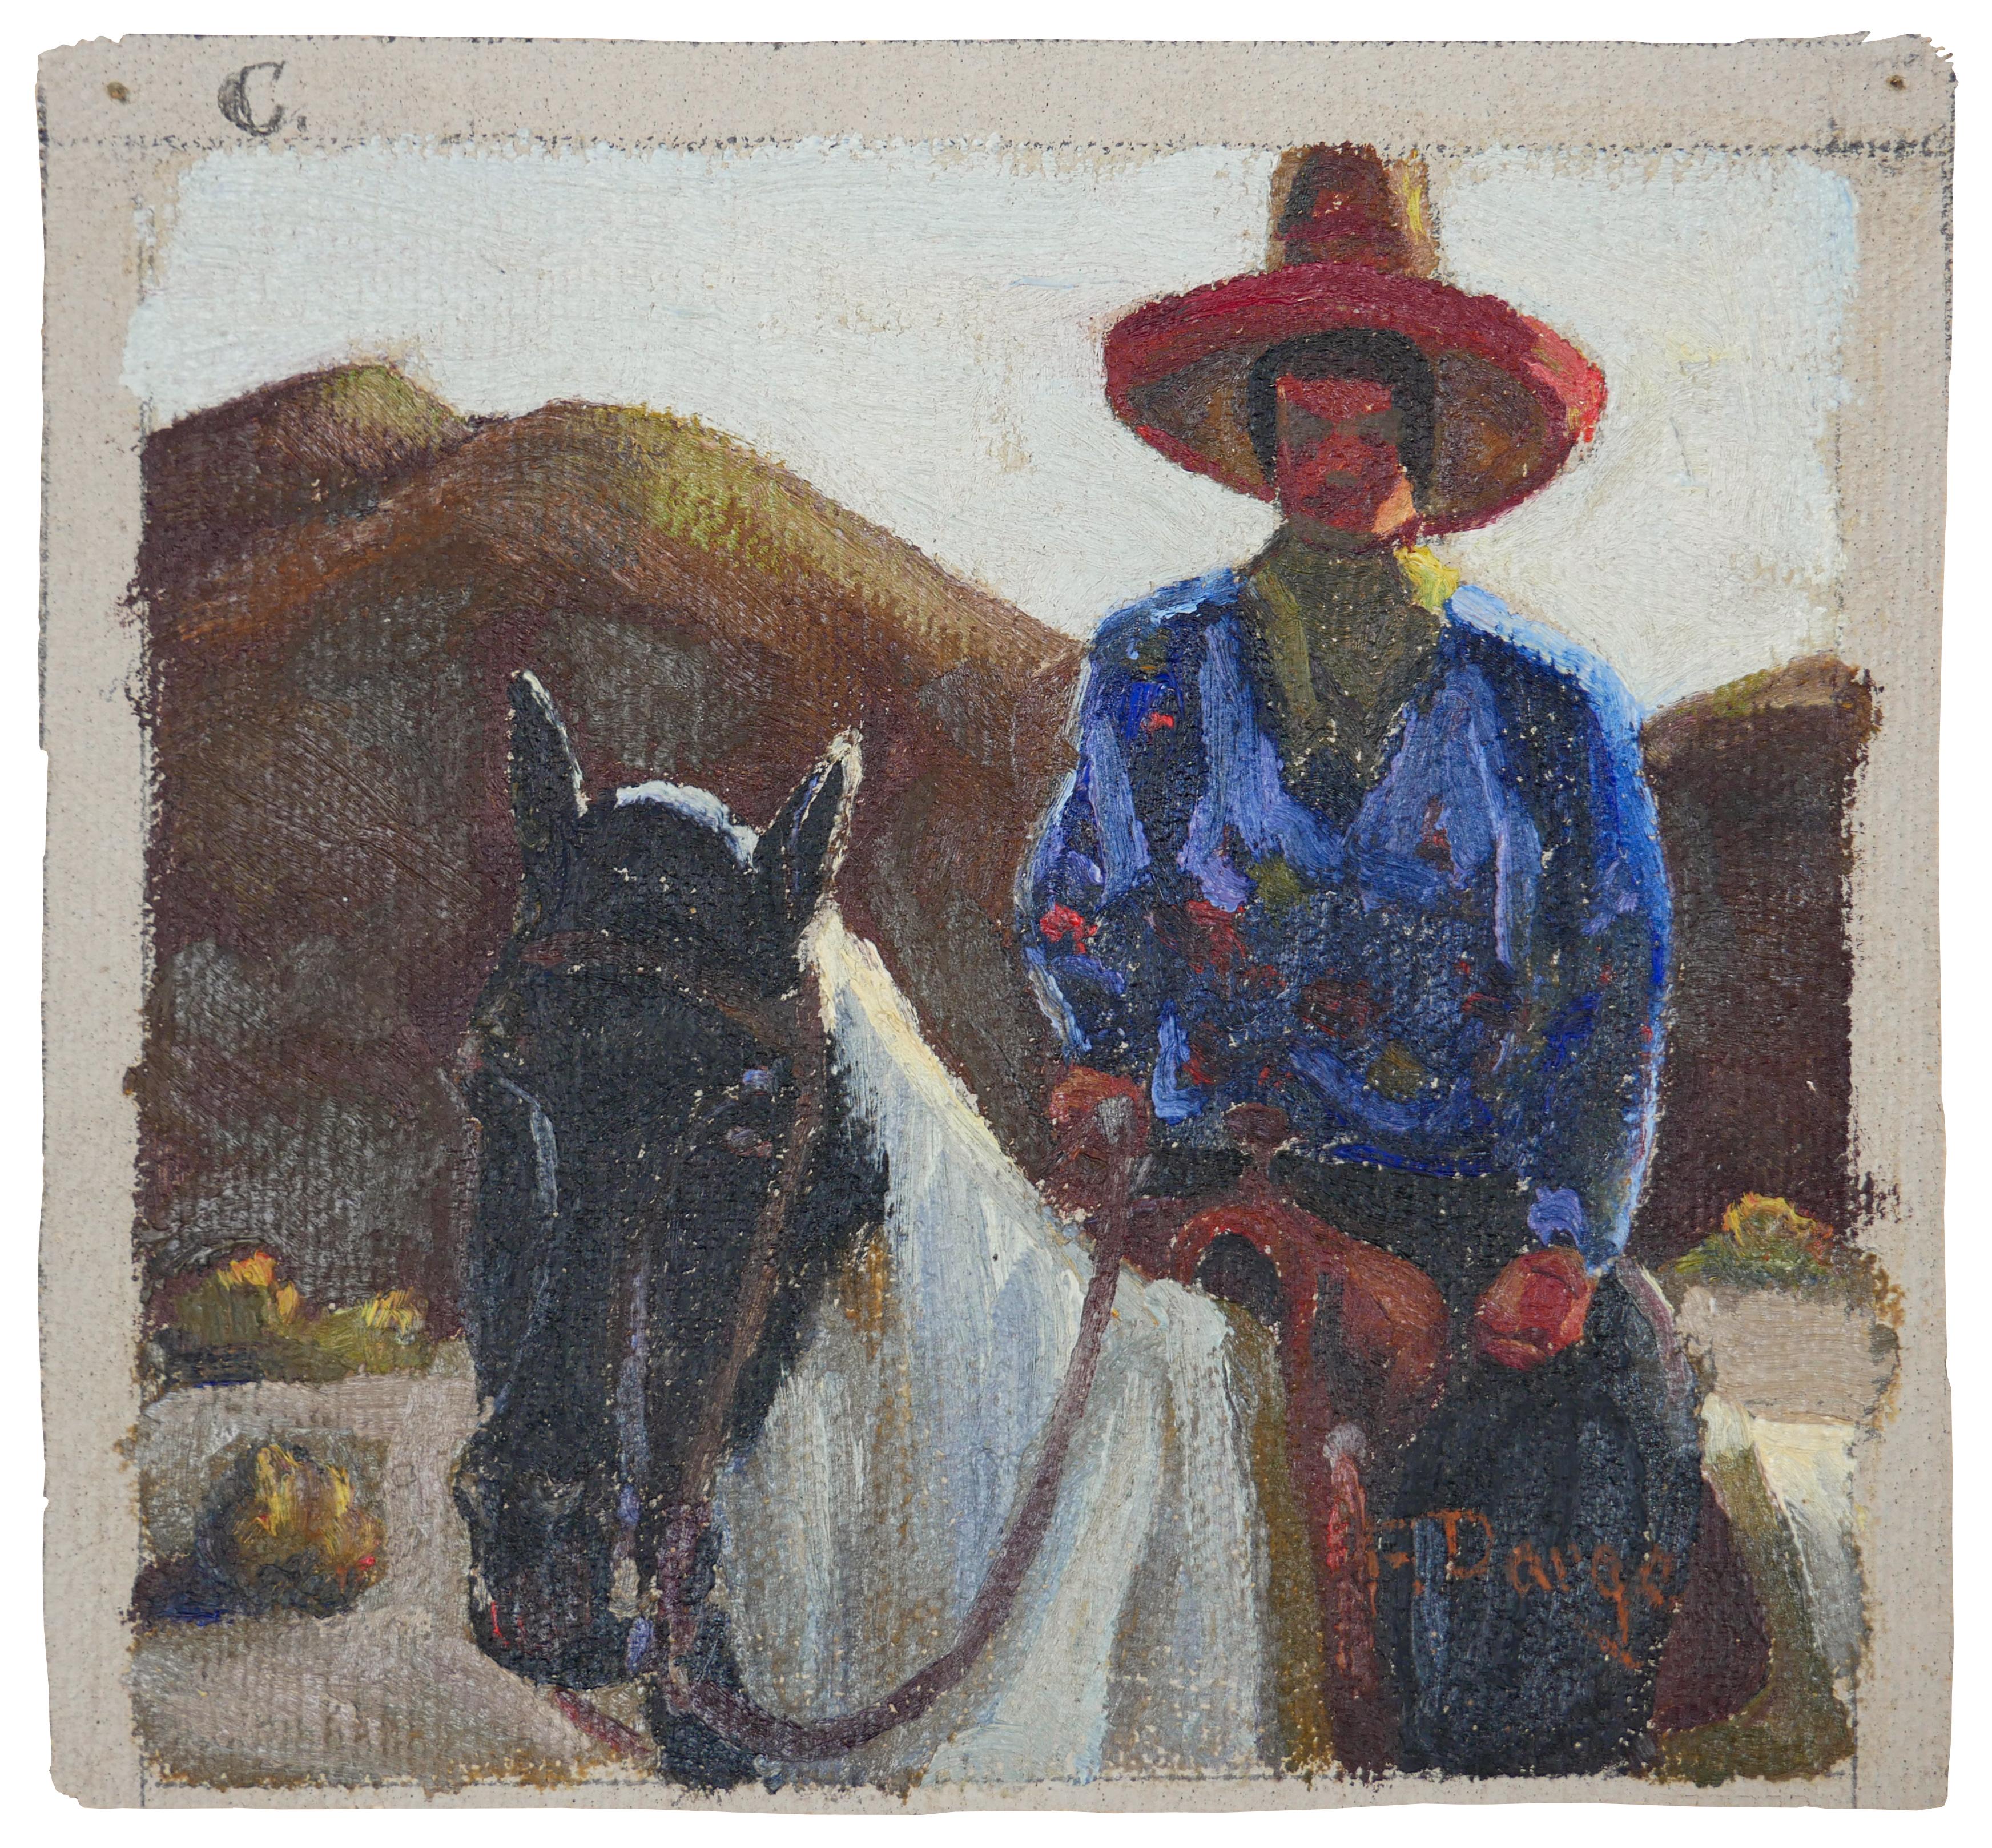 Animal Painting Fred Darge - Peinture impressionniste abstraite bleue, rouge et brune d'un cow-boy sur un cheval